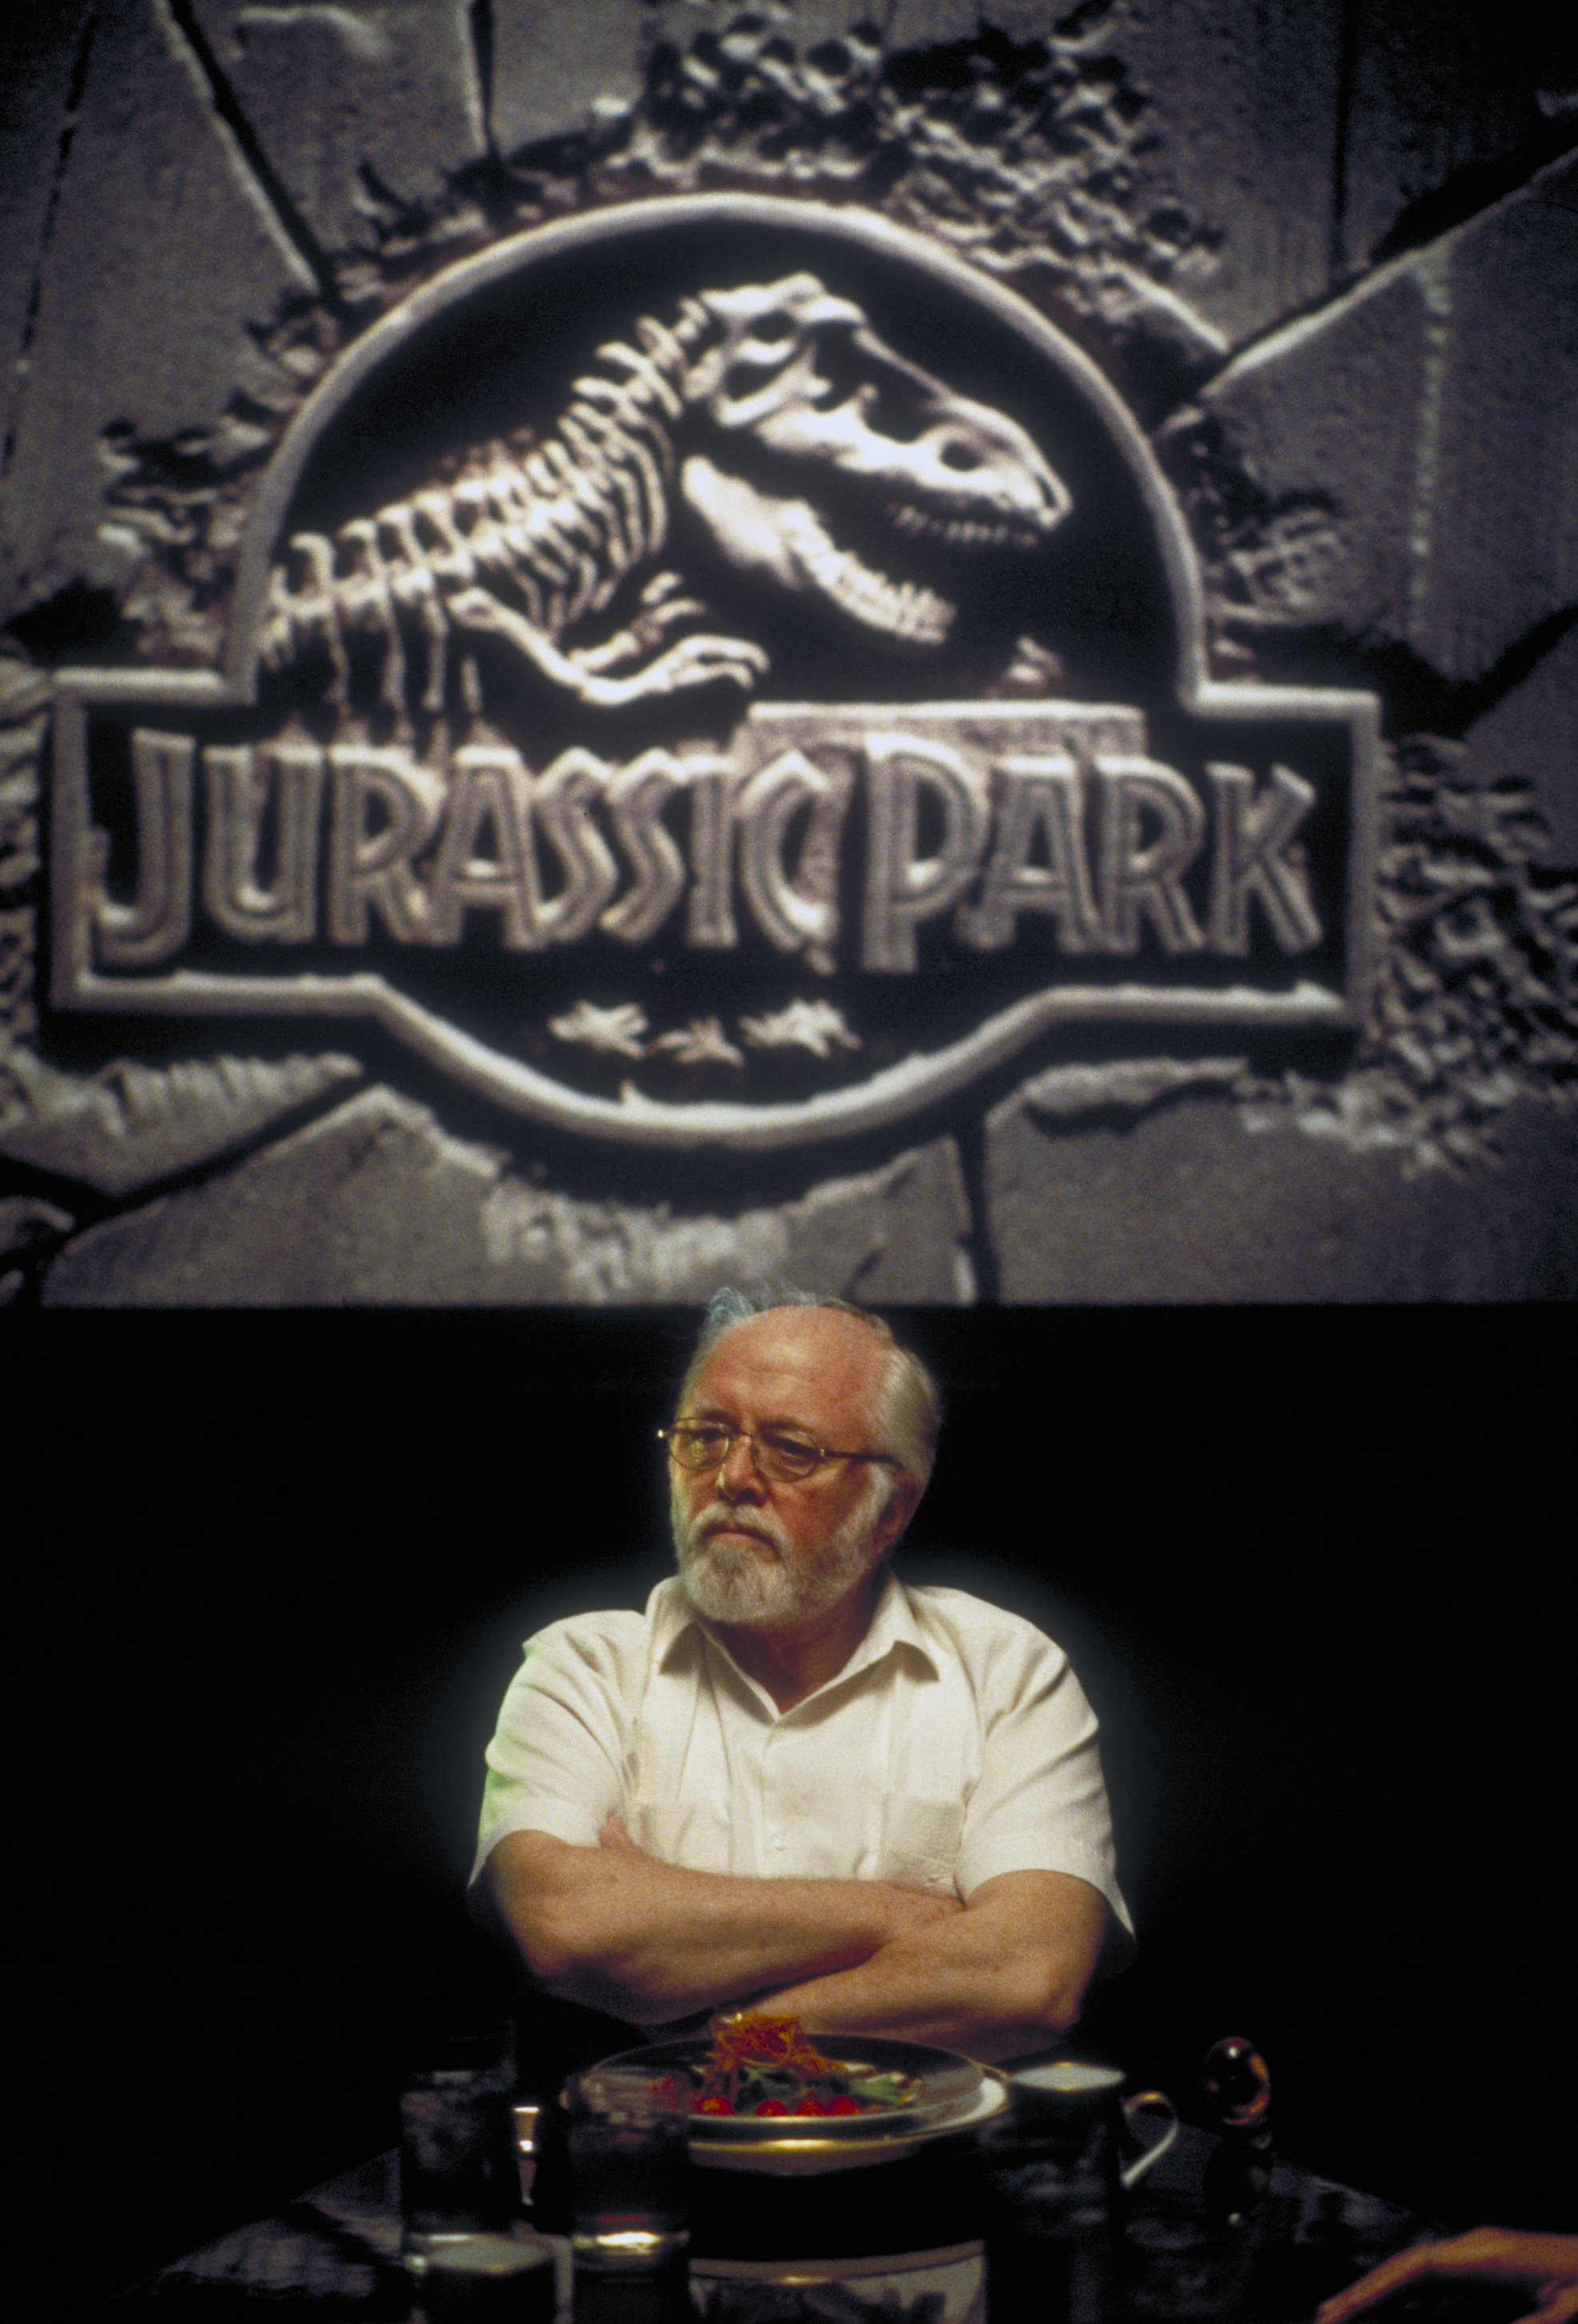 Still of Richard Attenborough in Juros periodo parkas (1993)